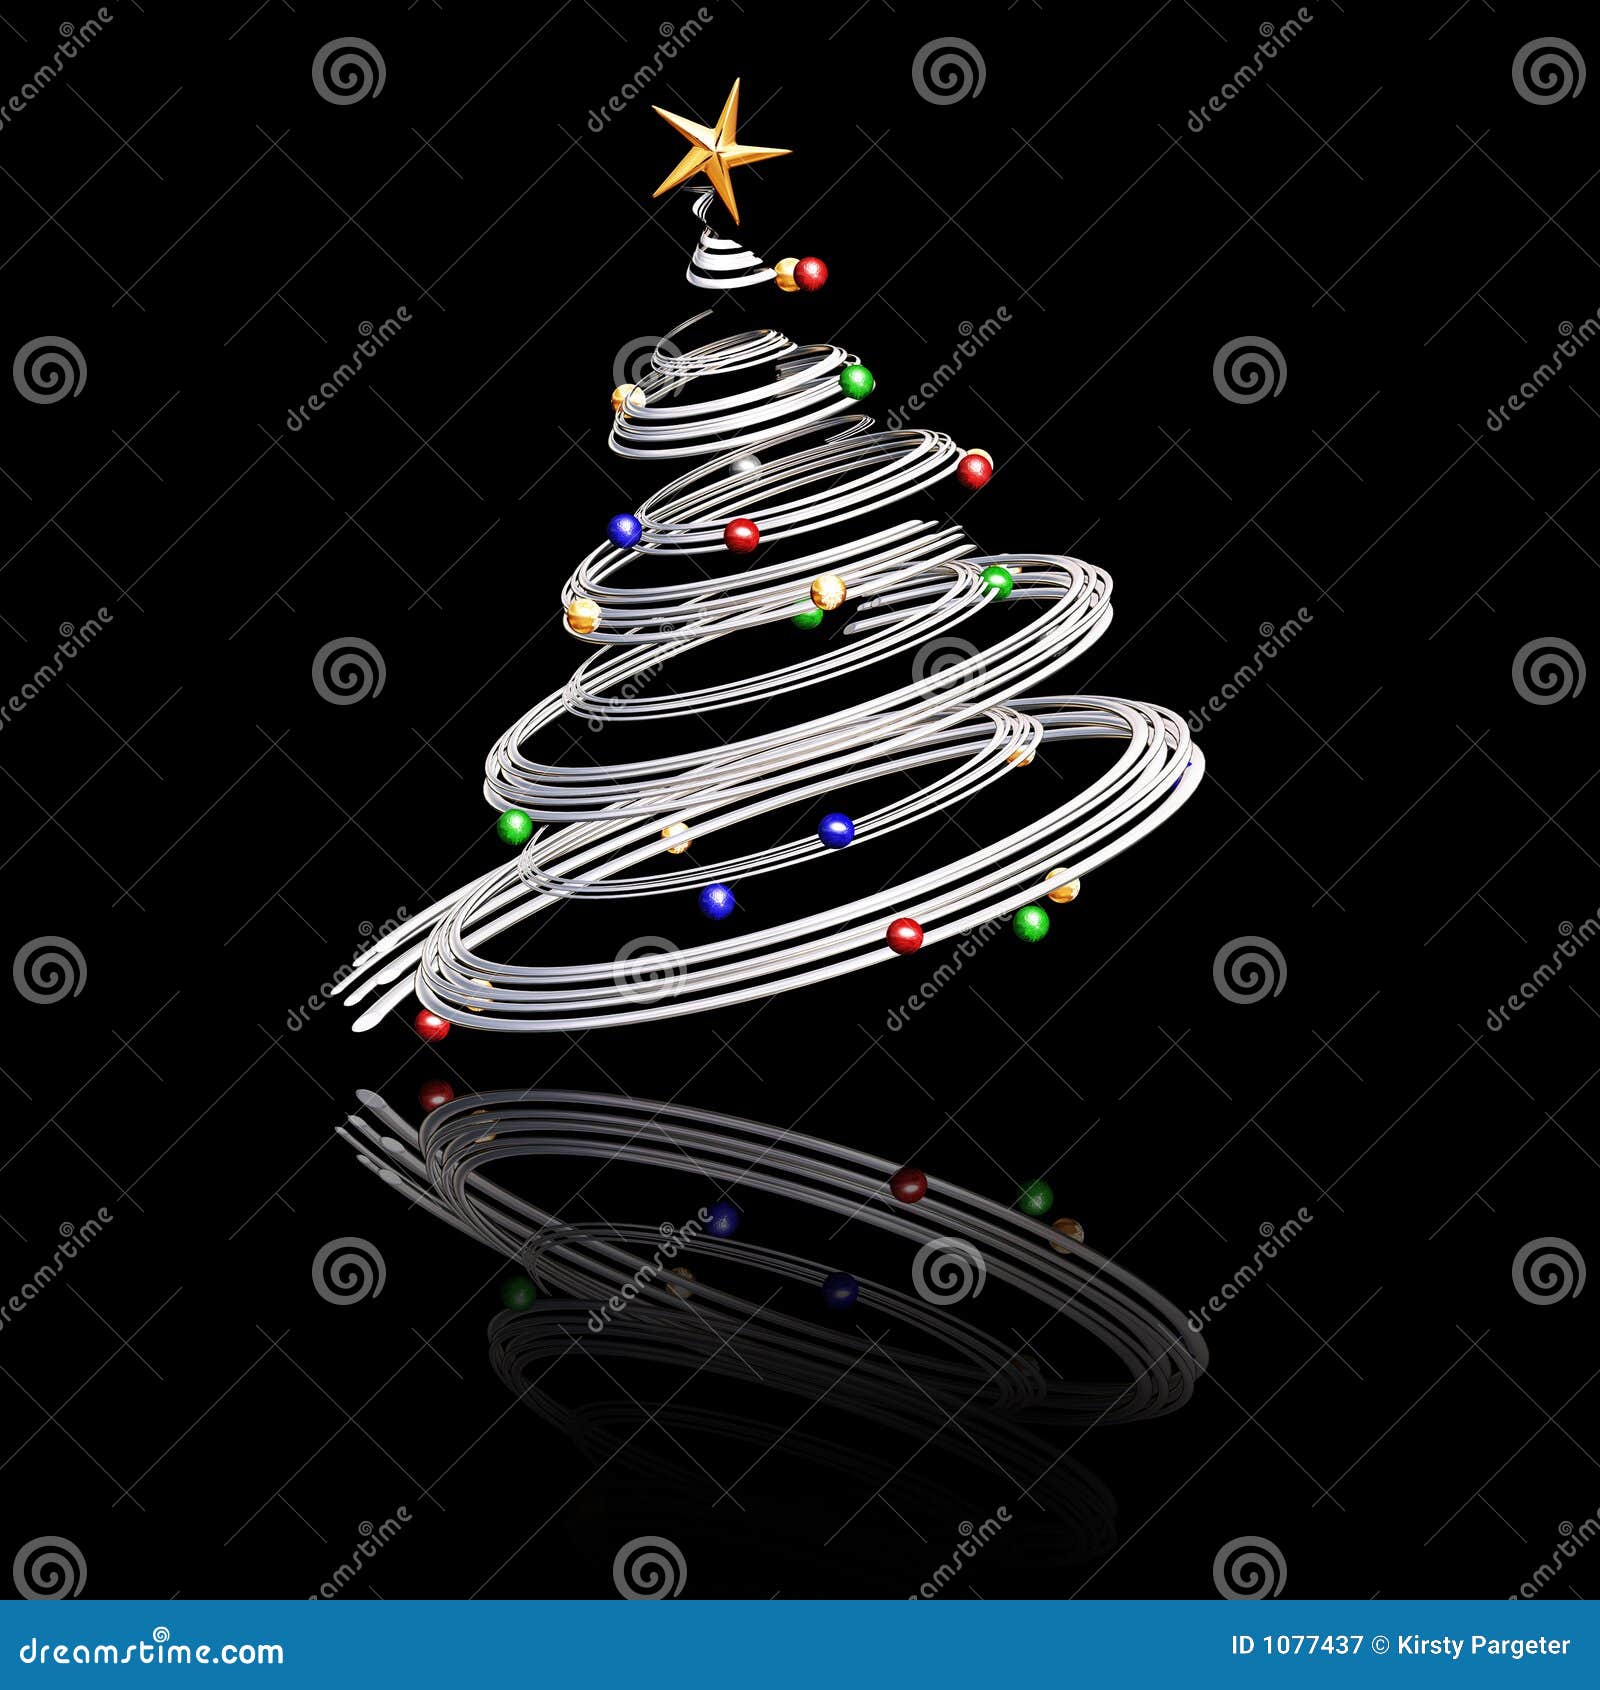 Immagini Natale 3d.Albero Di Natale 3d Illustrazione Di Stock Illustrazione Di Abete 1077437